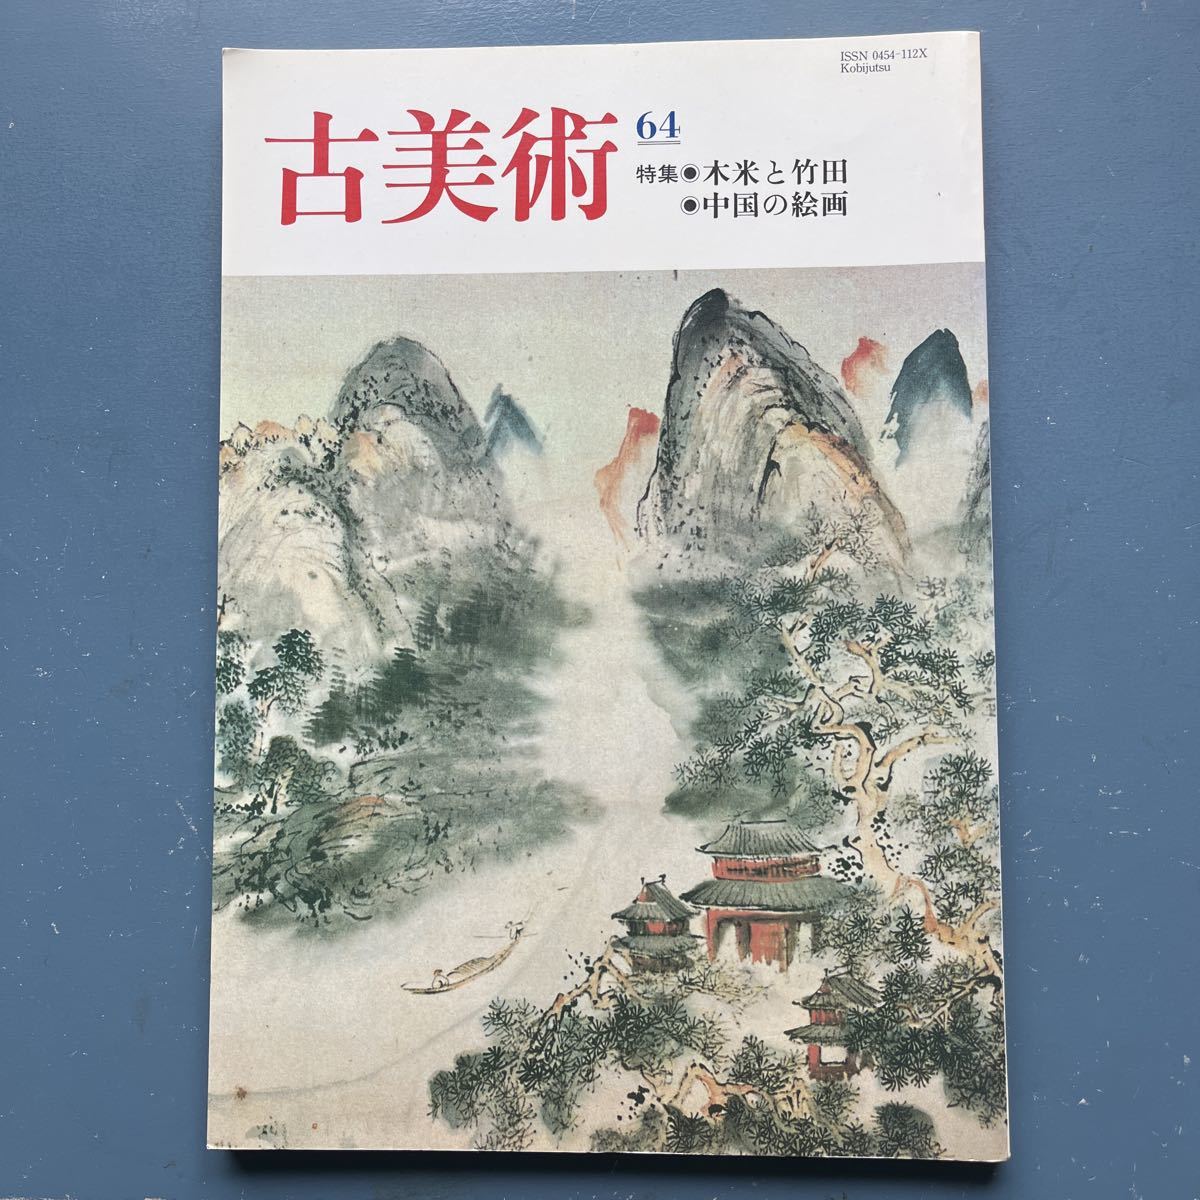 古董艺术64特辑：木米与武田中国画, 杂志, 艺术, 娱乐, 普通艺术